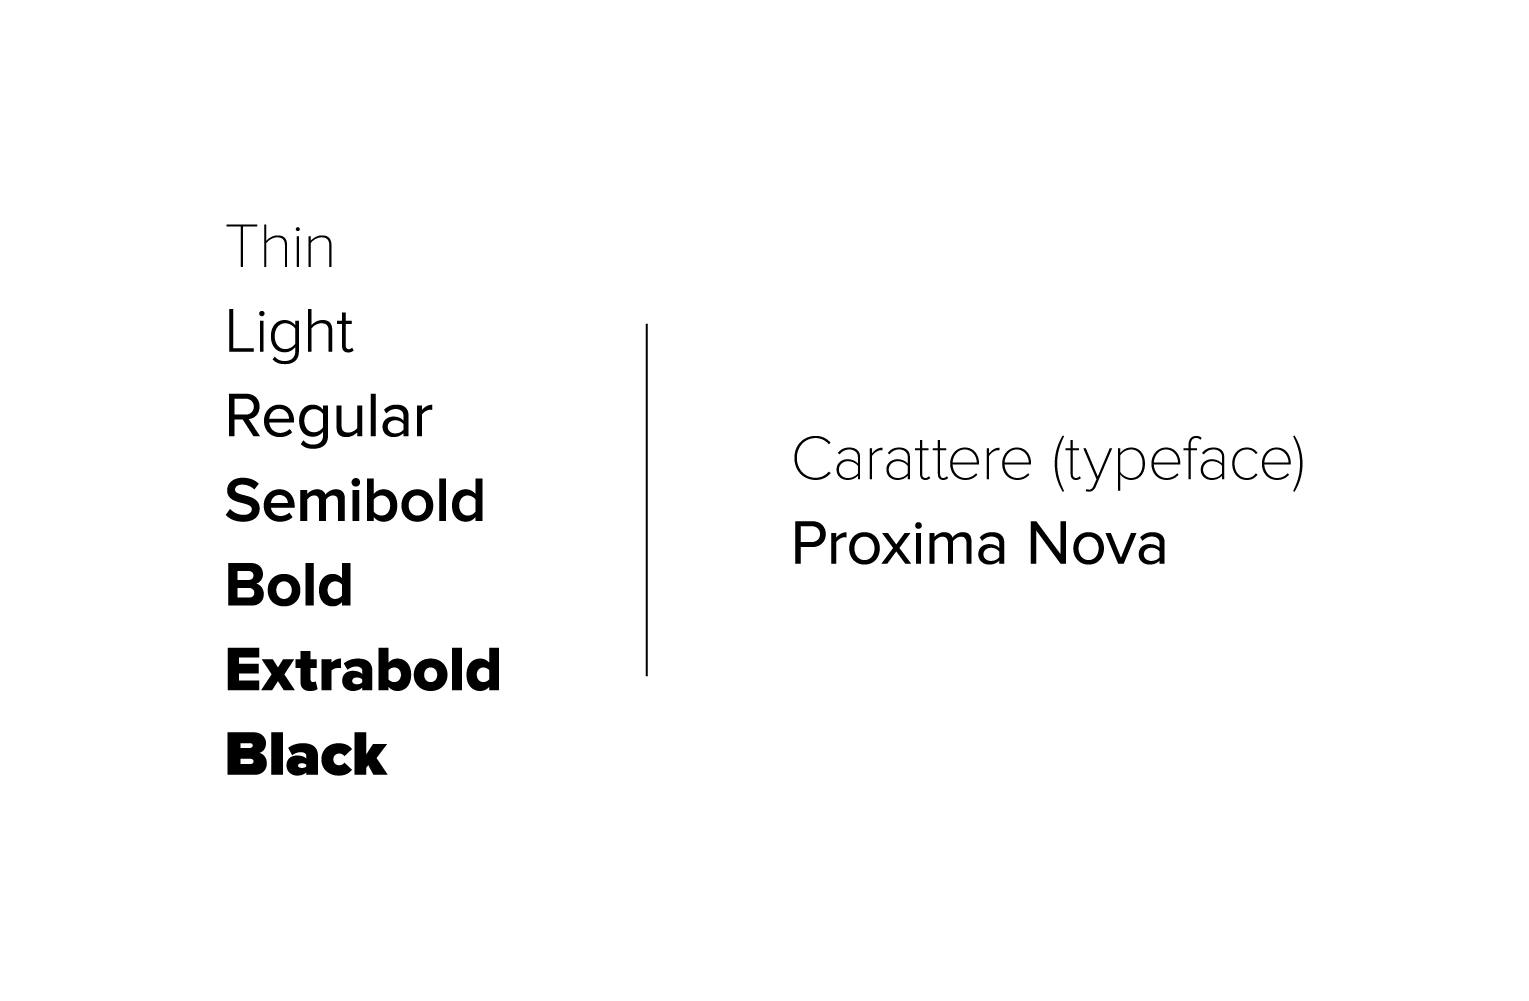 Proxima Nova ha al suo interno 7 pesi differenti